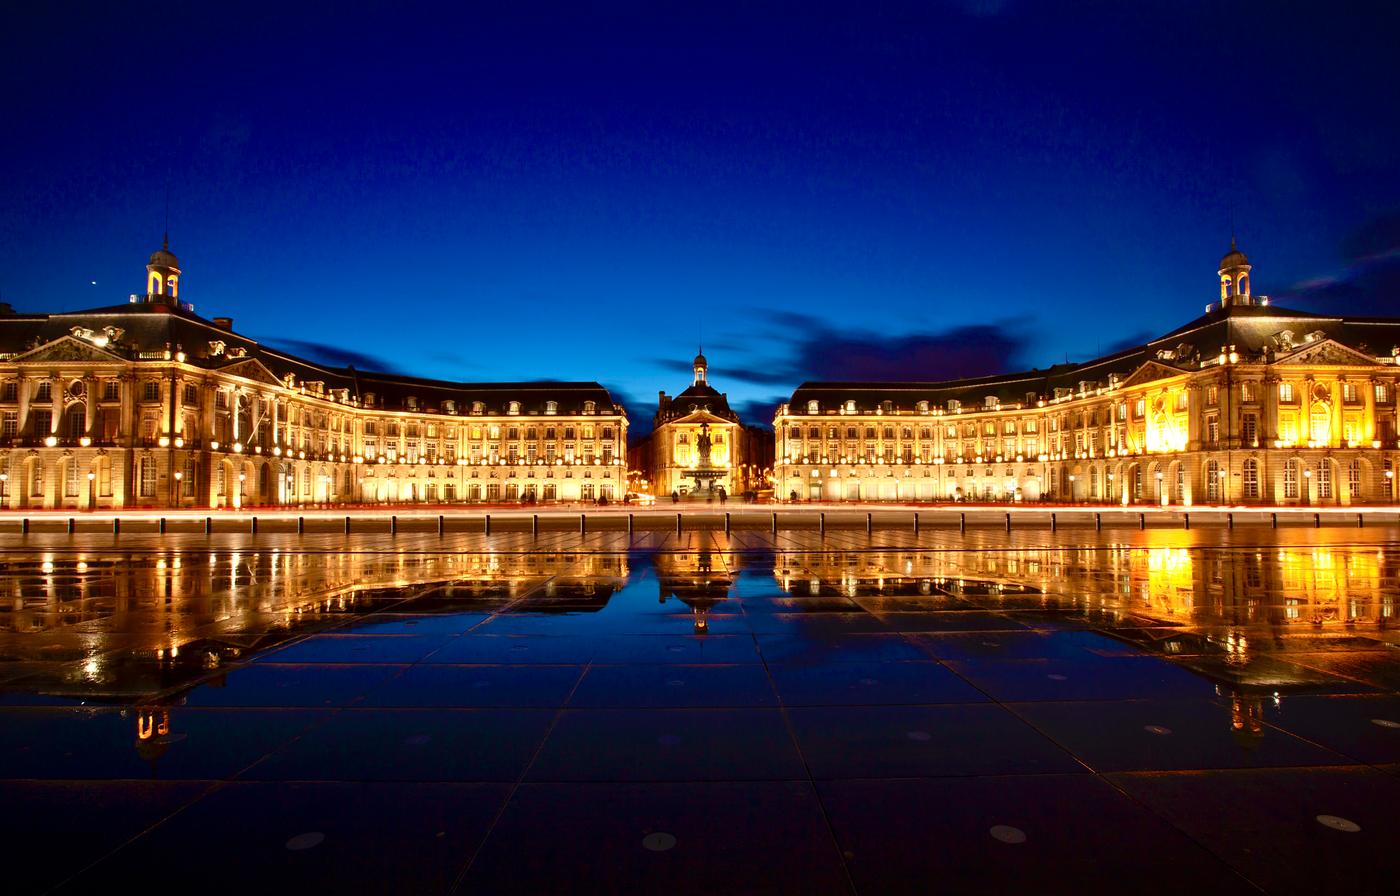 Bordeaux: Wine, Culture & Architecture